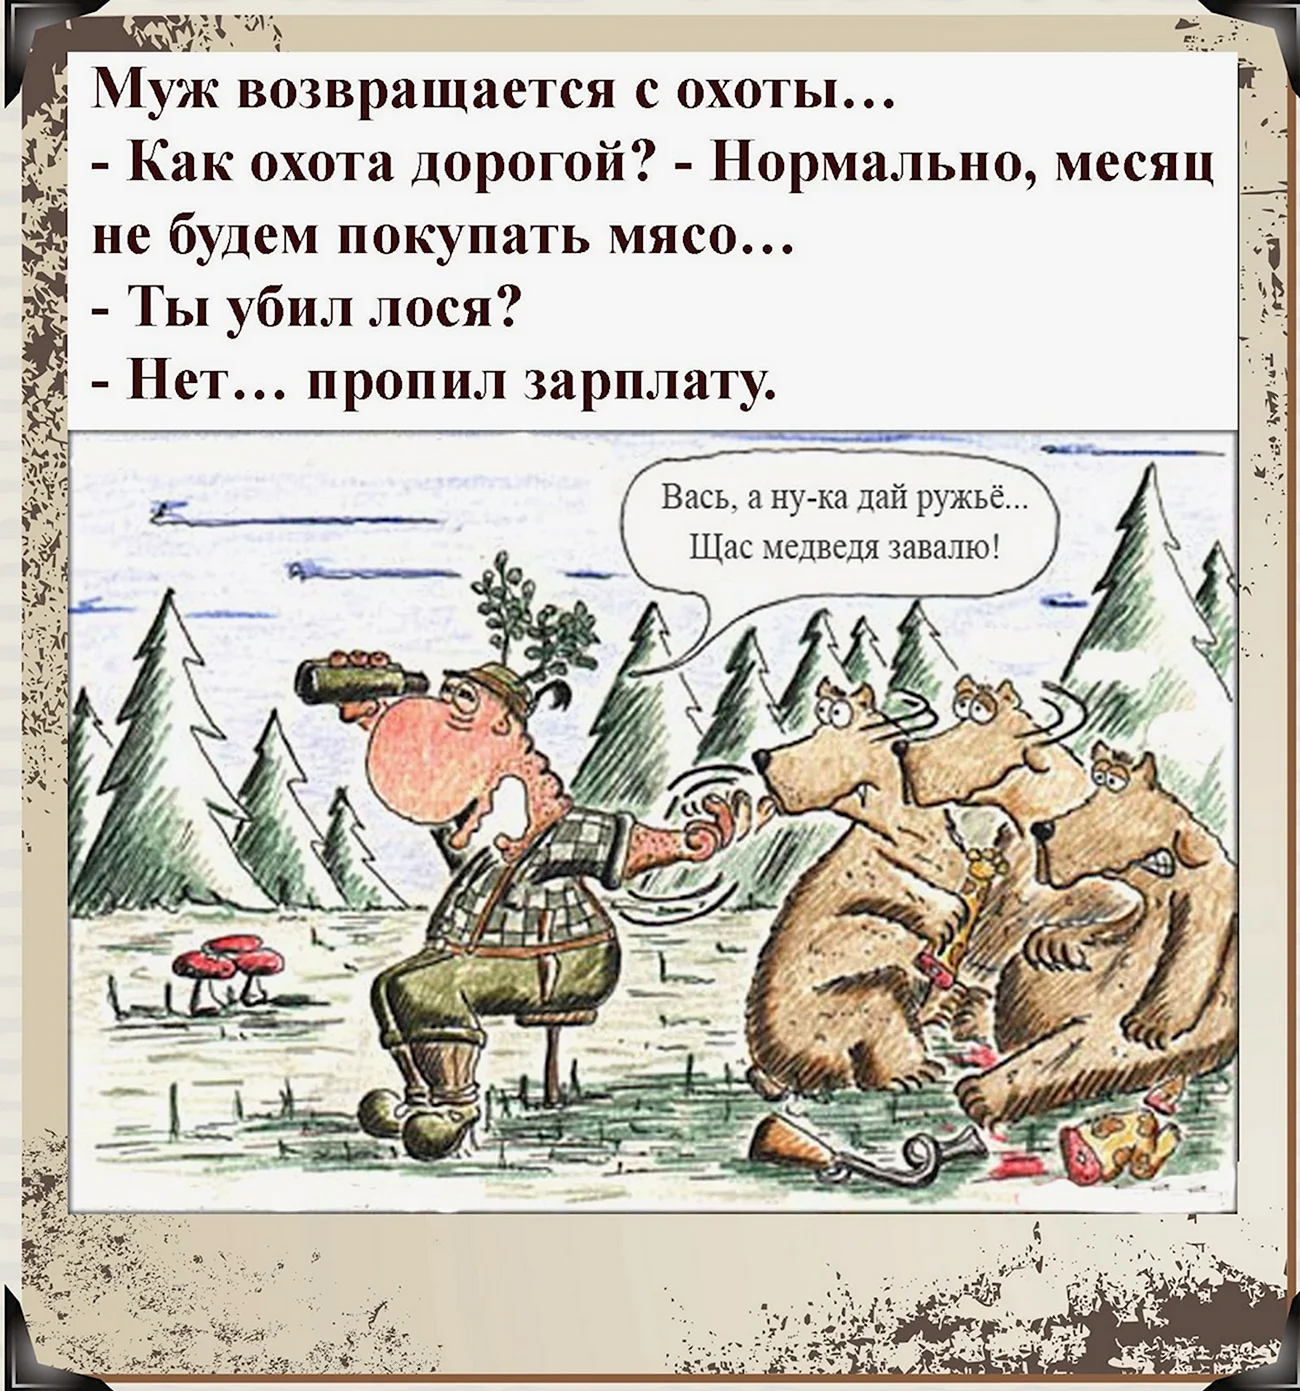 Анекдот про медведя и охотника. Картинка